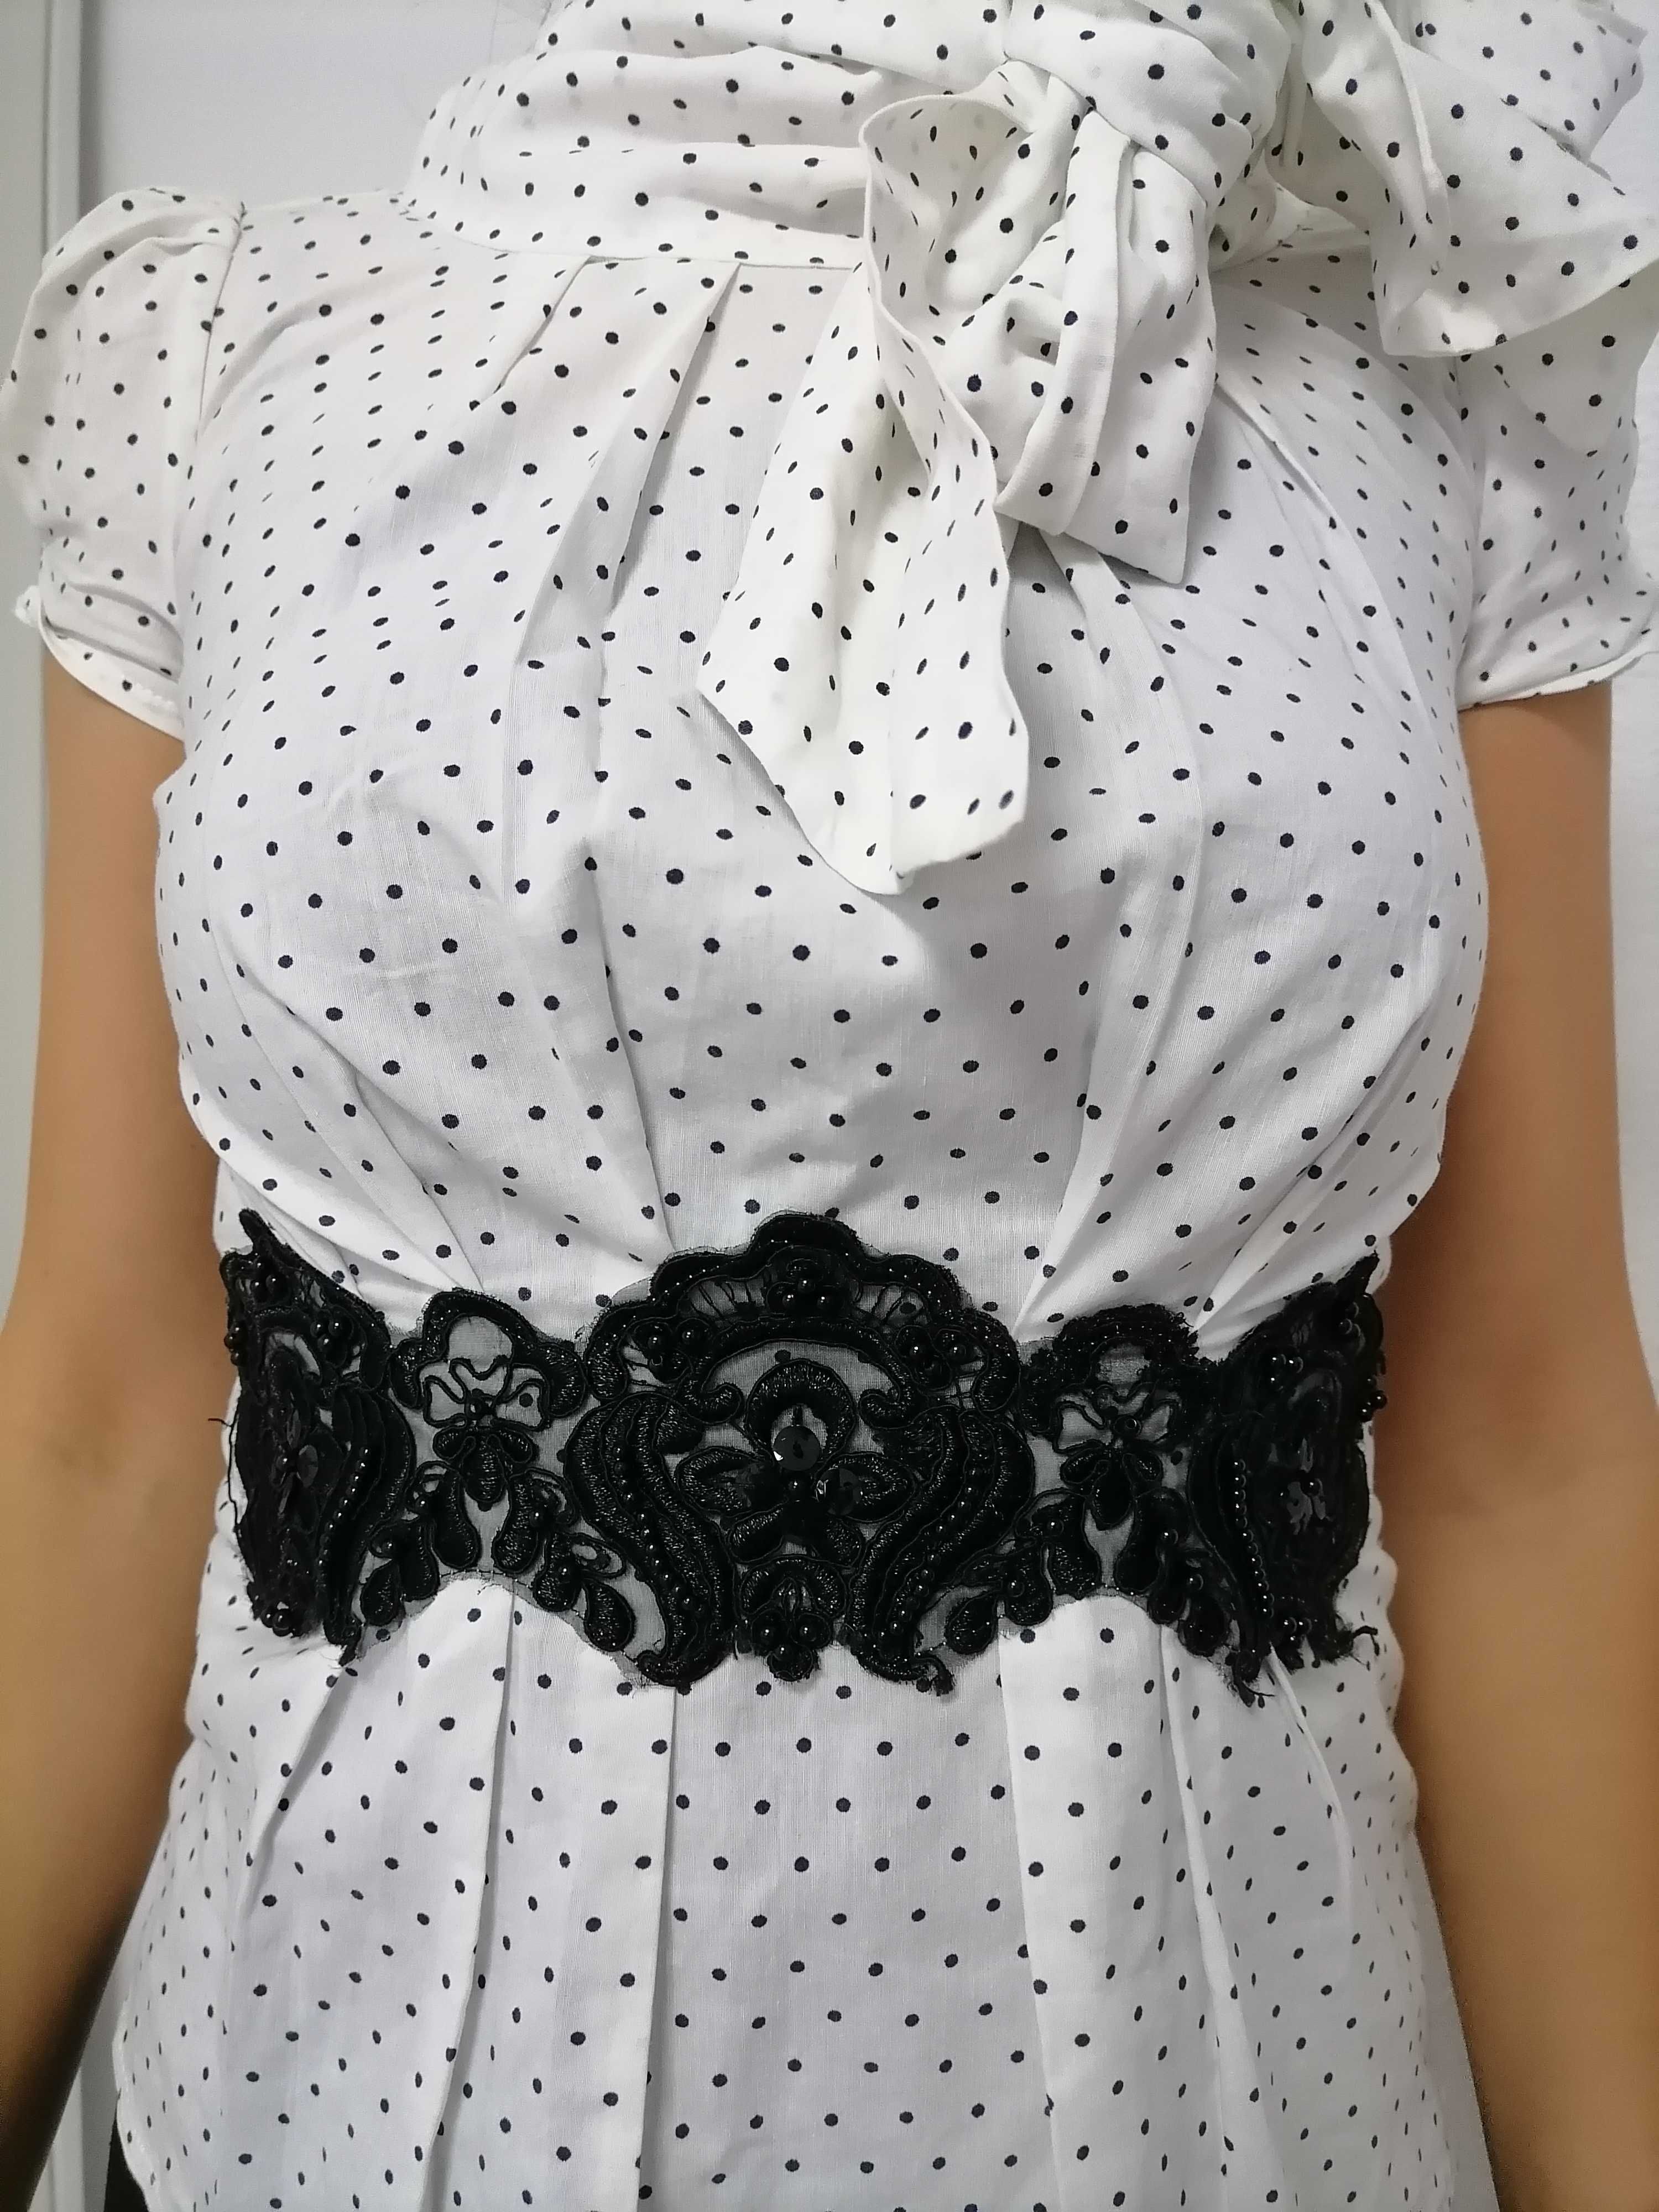 Дамска блуза подходяща за офис или повод